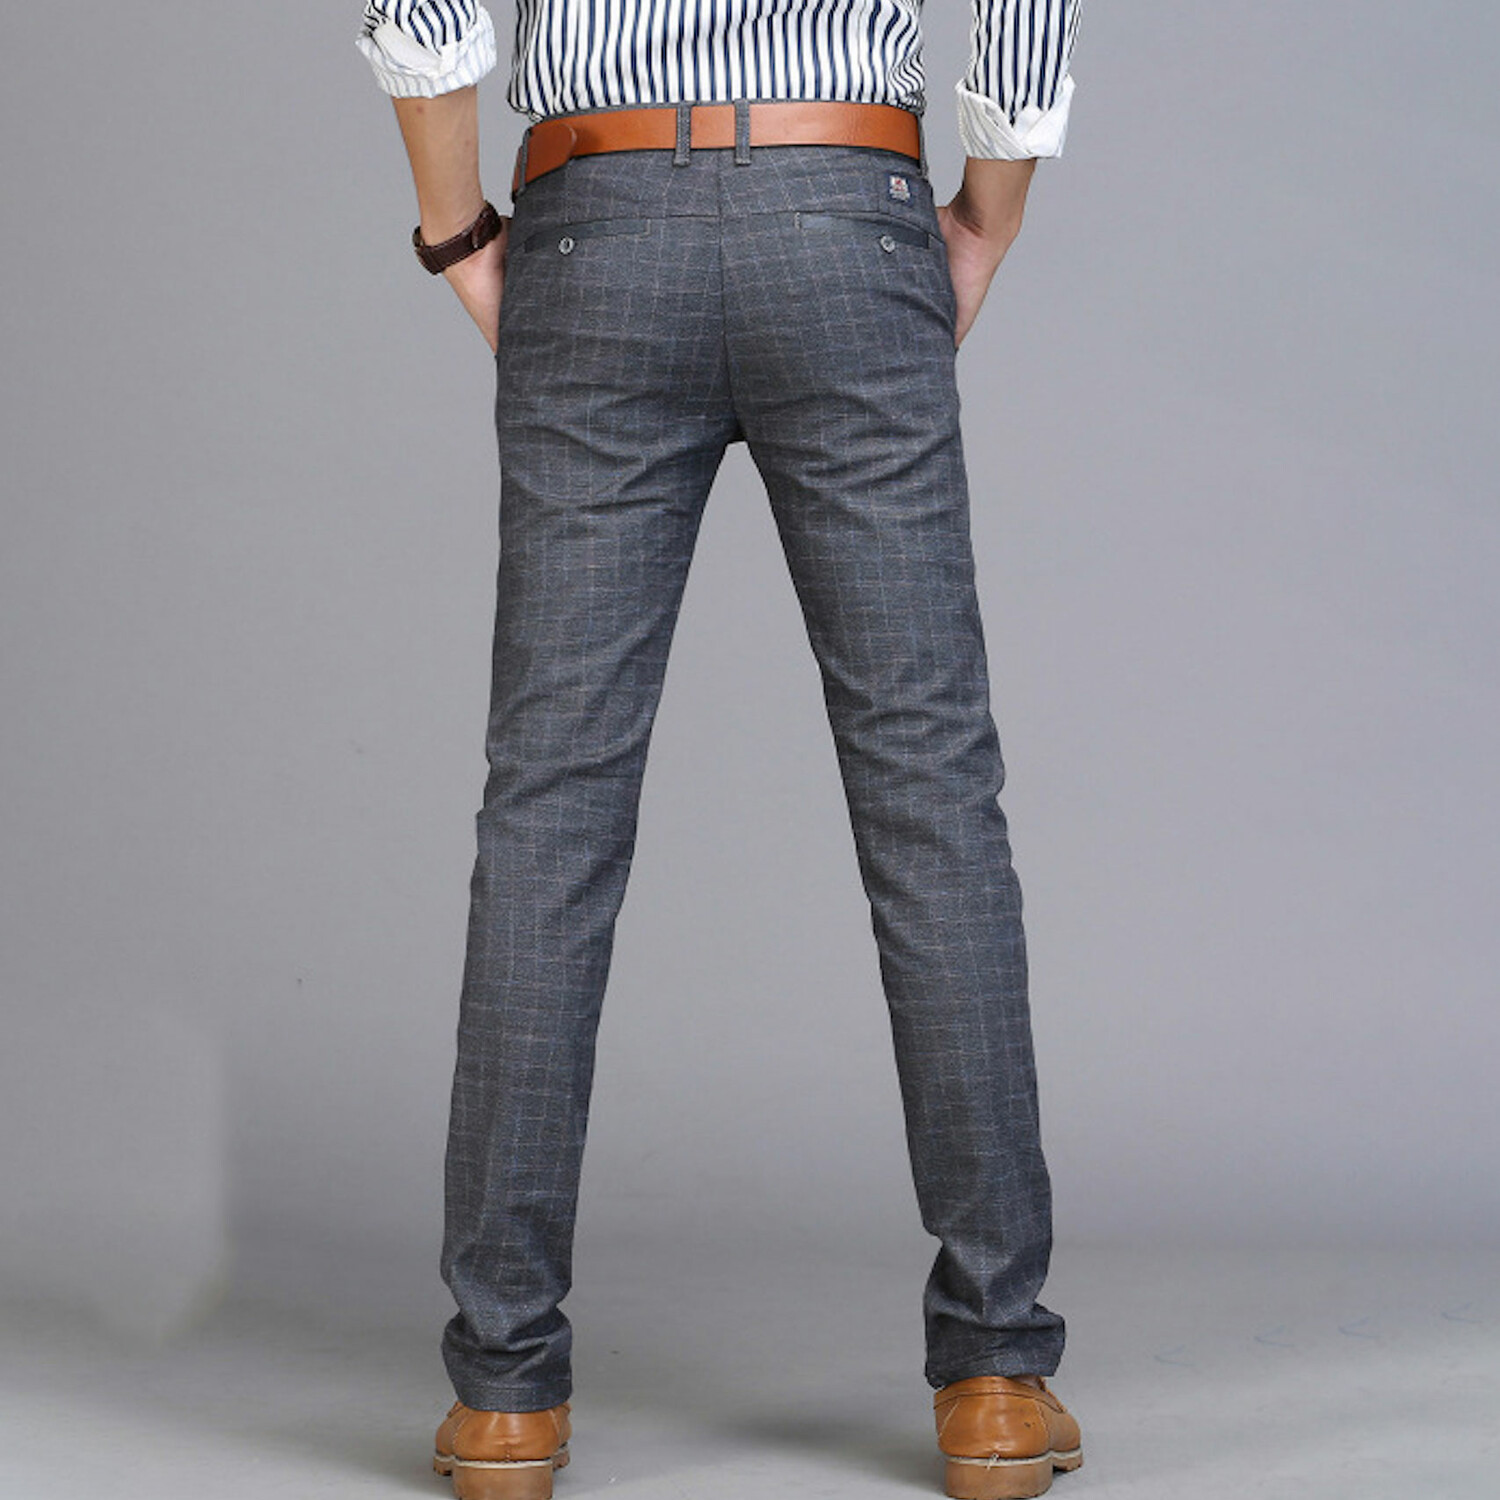 Grid Print Slim Fit Pants // Dark Gray (32) - Amedeo Exclusive Slim Fit ...